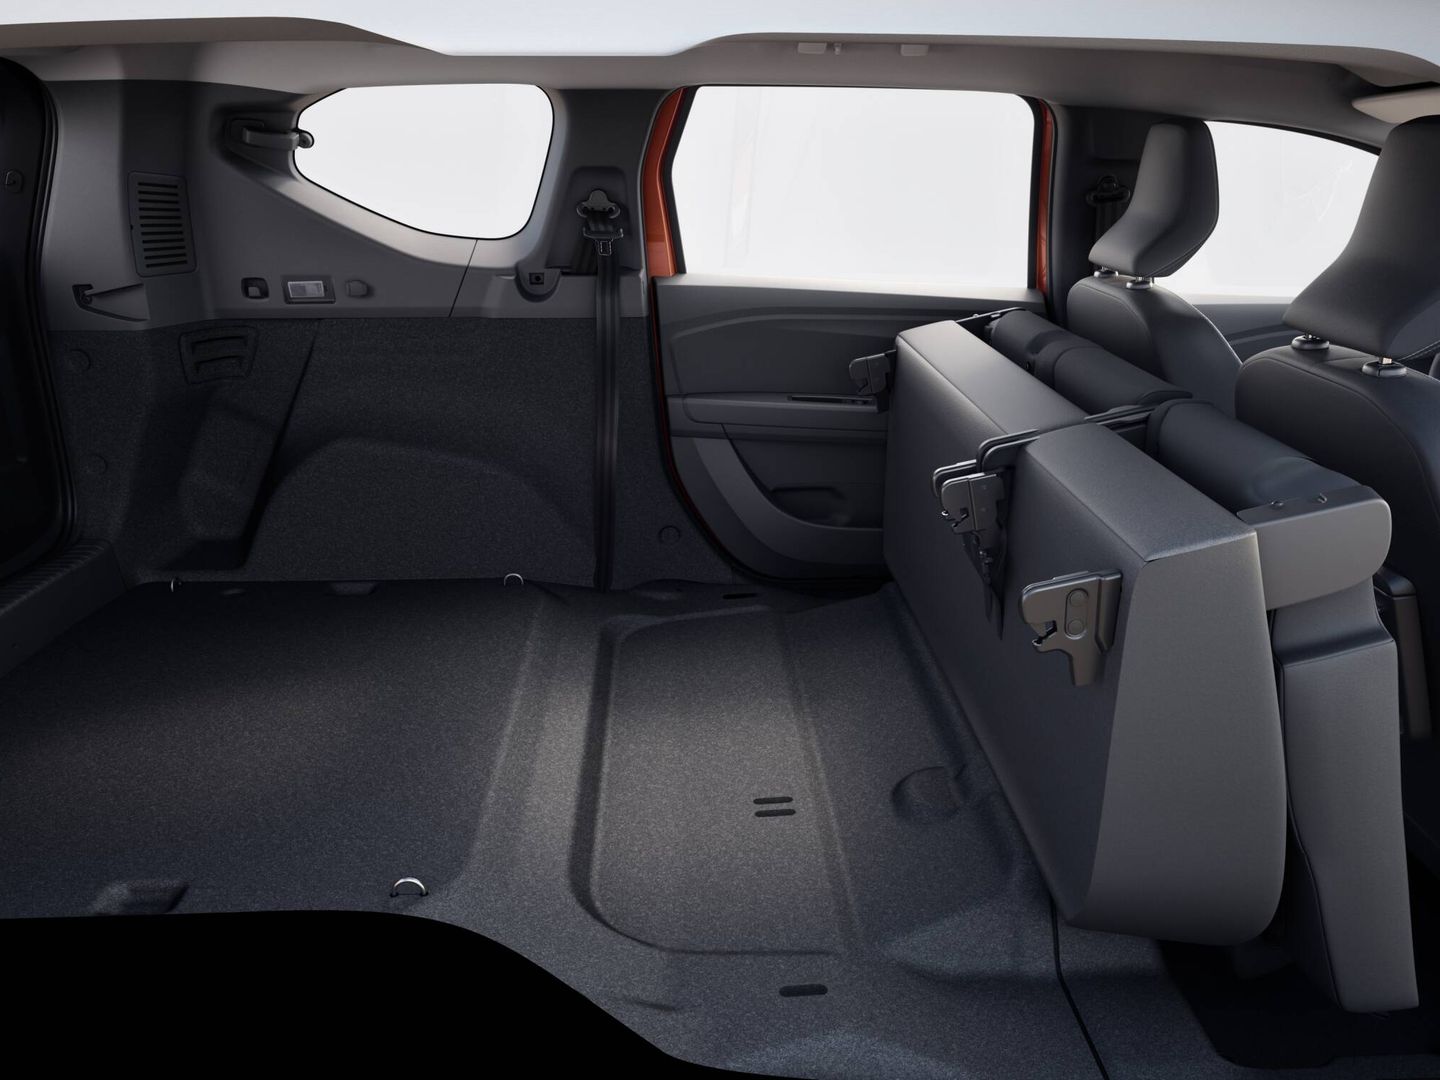 Según Dacia, el interior del Jogger ofrece unas 60 configuraciones de asientos diferentes, lo que dice mucho en favor de su versatilidad.